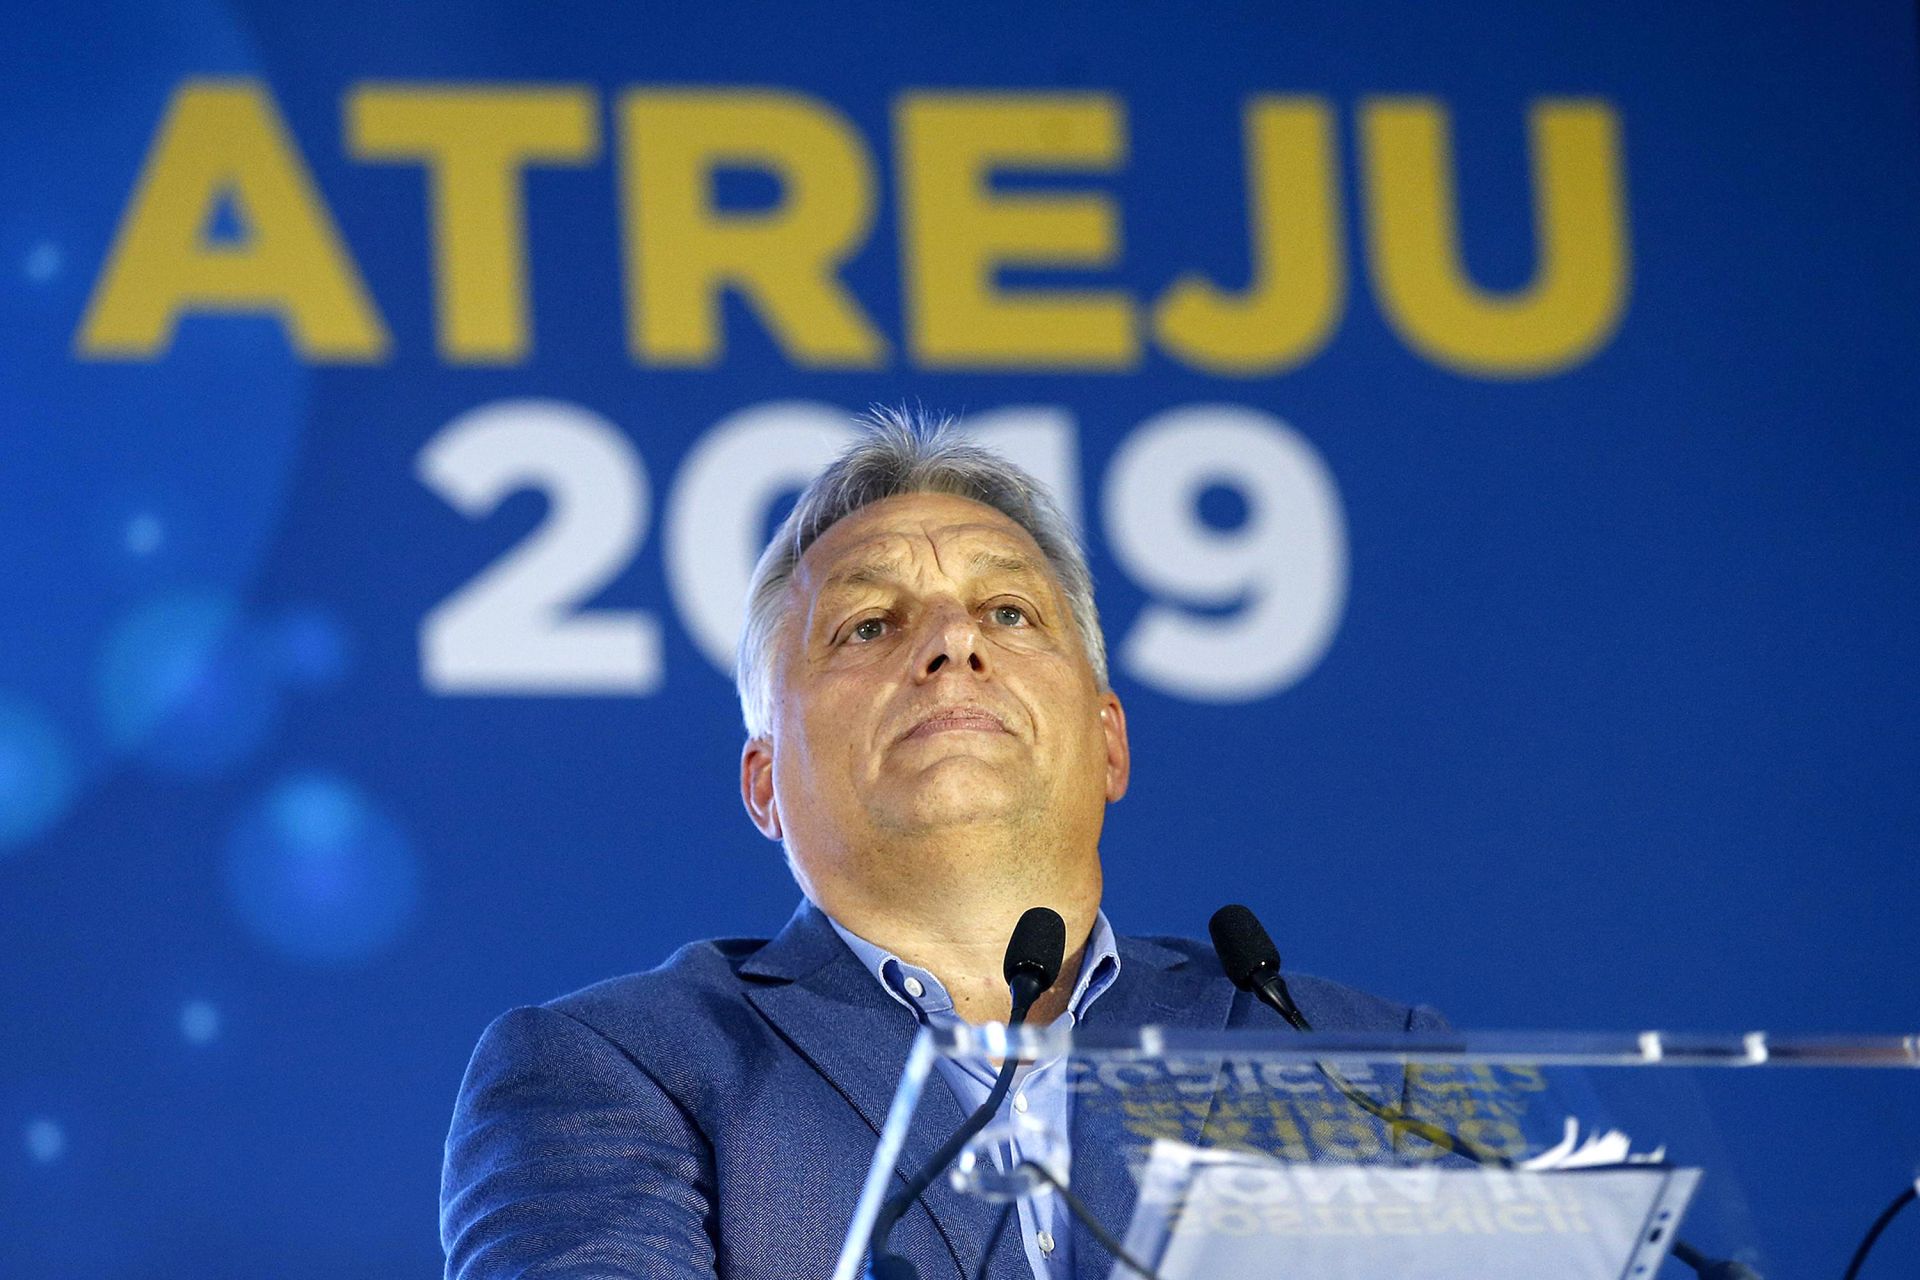 През последните десет години правителството на Орбан пое контрола над повечето медии, пряко или косвено", се казва в изявлението на медийната група